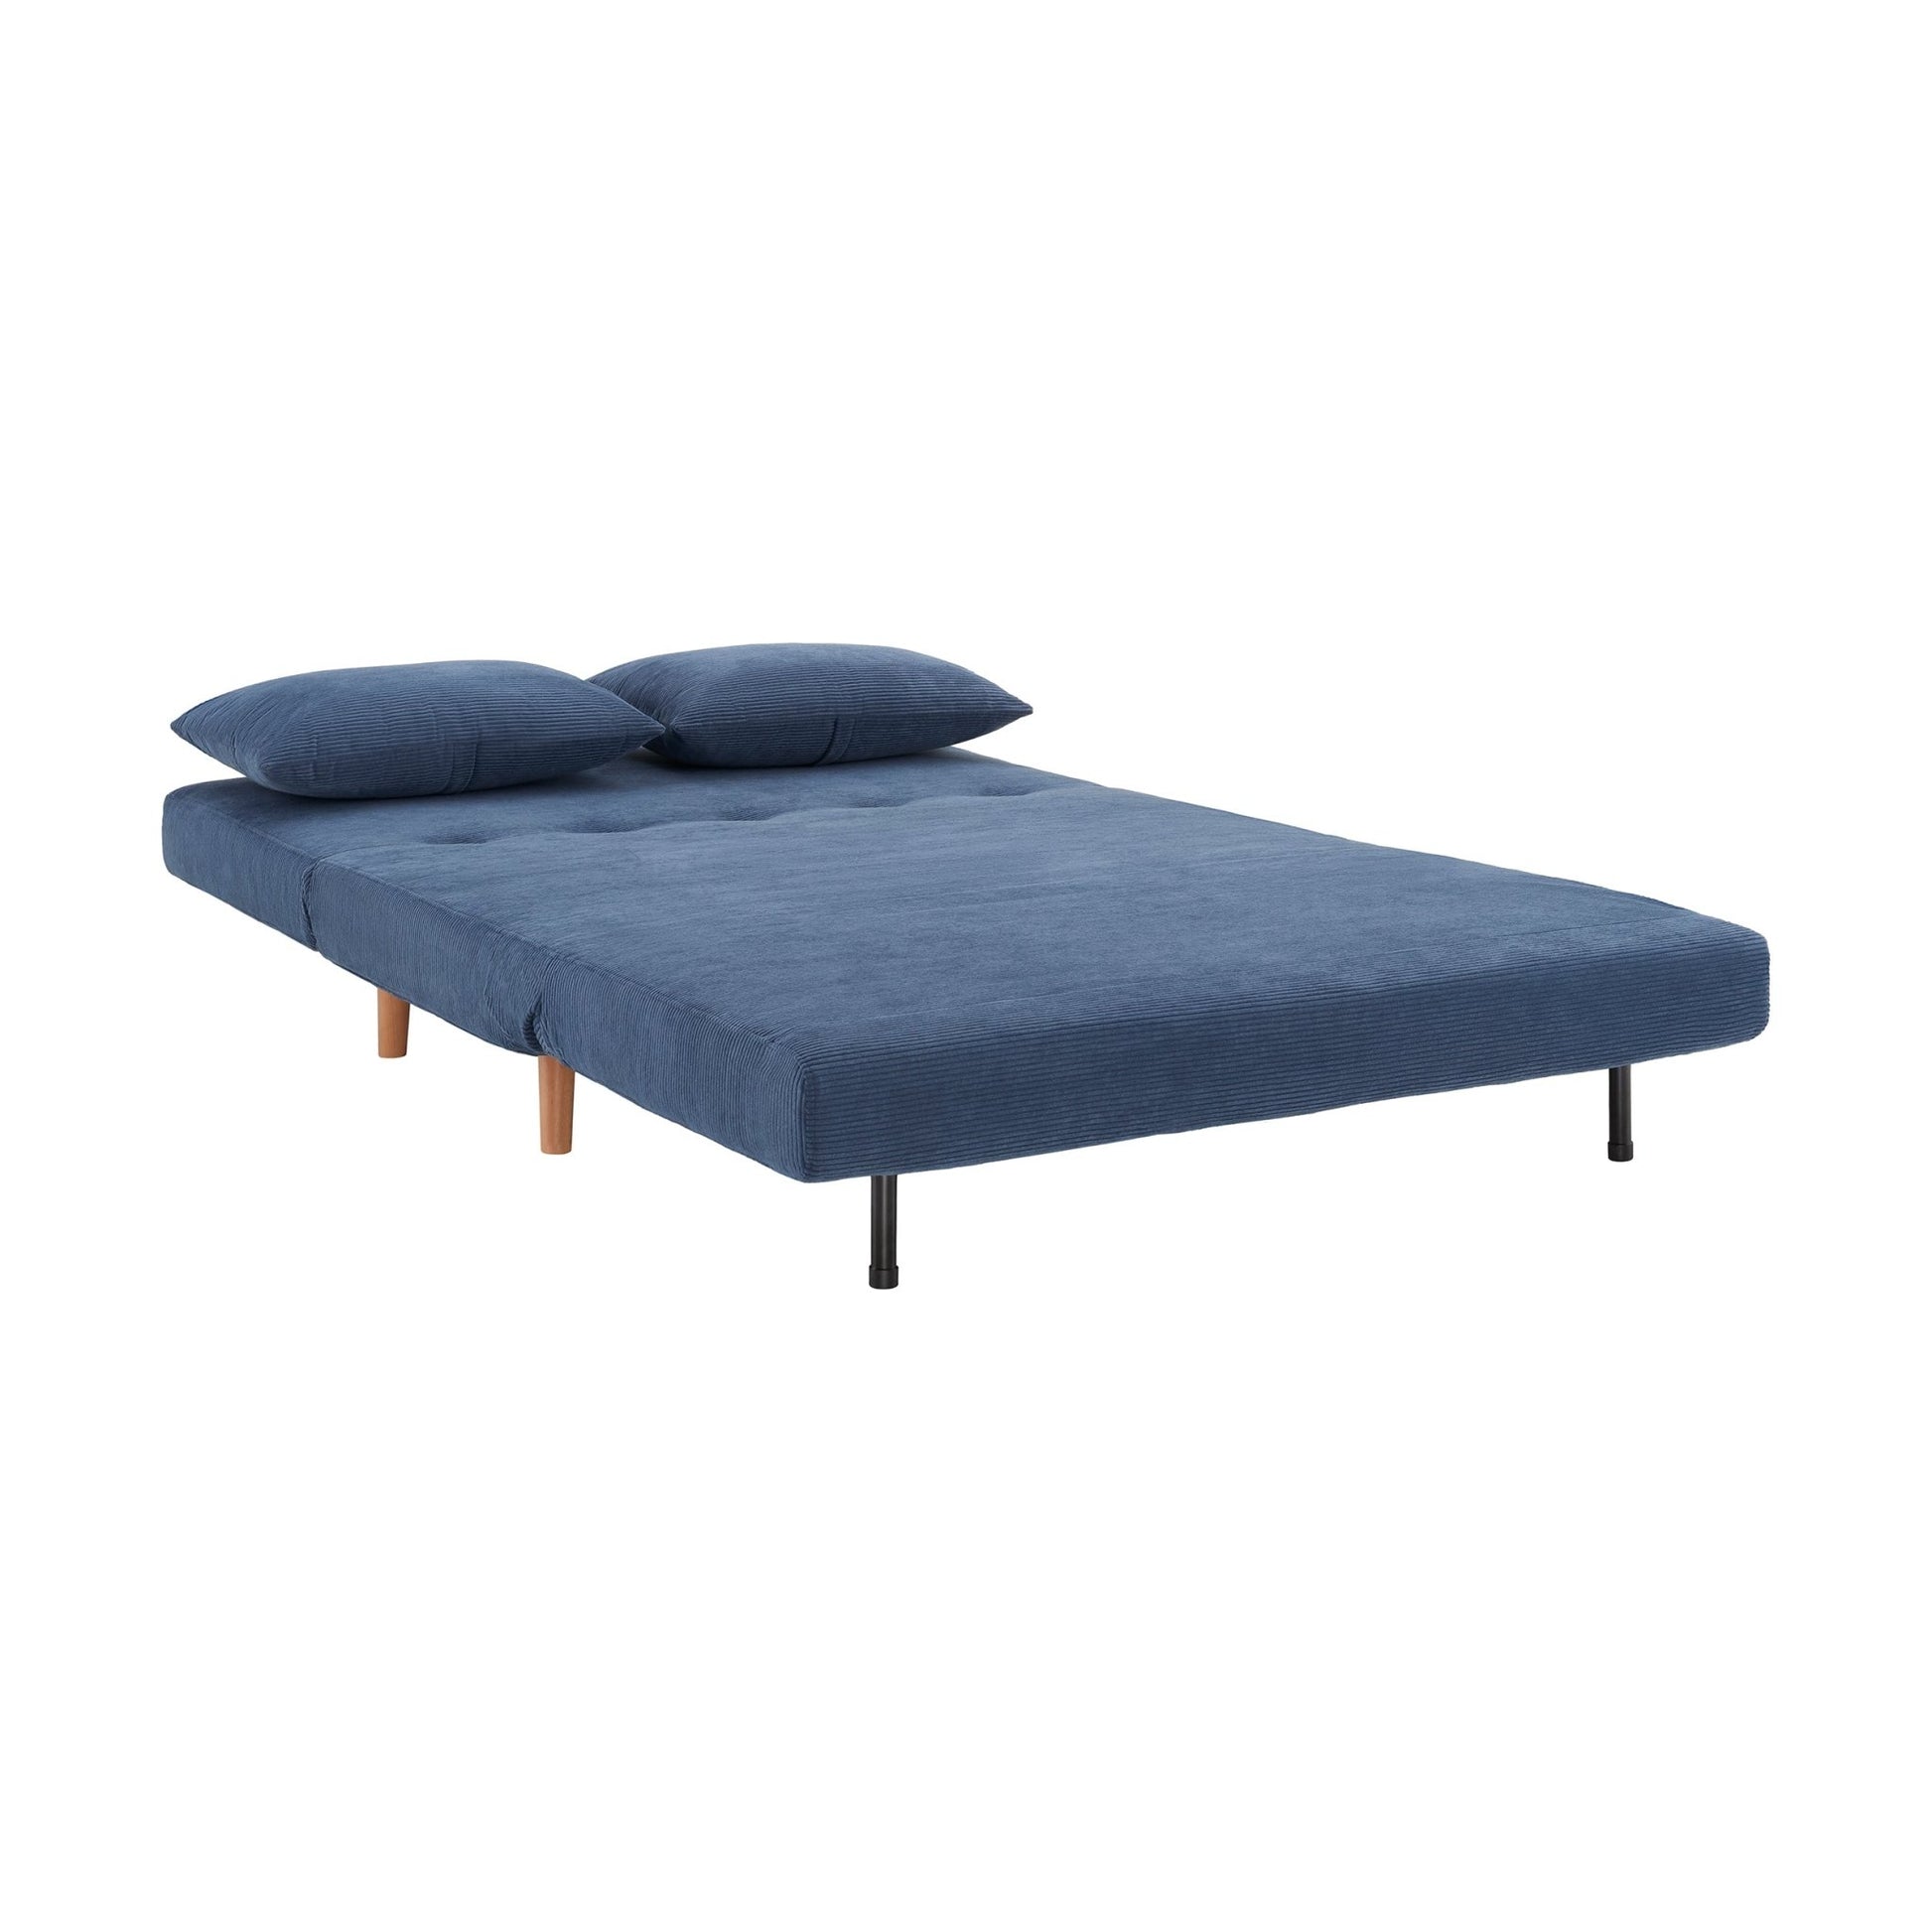 Seattle Double Click Clack Sofa Bed - Corduroy - Blue - DUSK